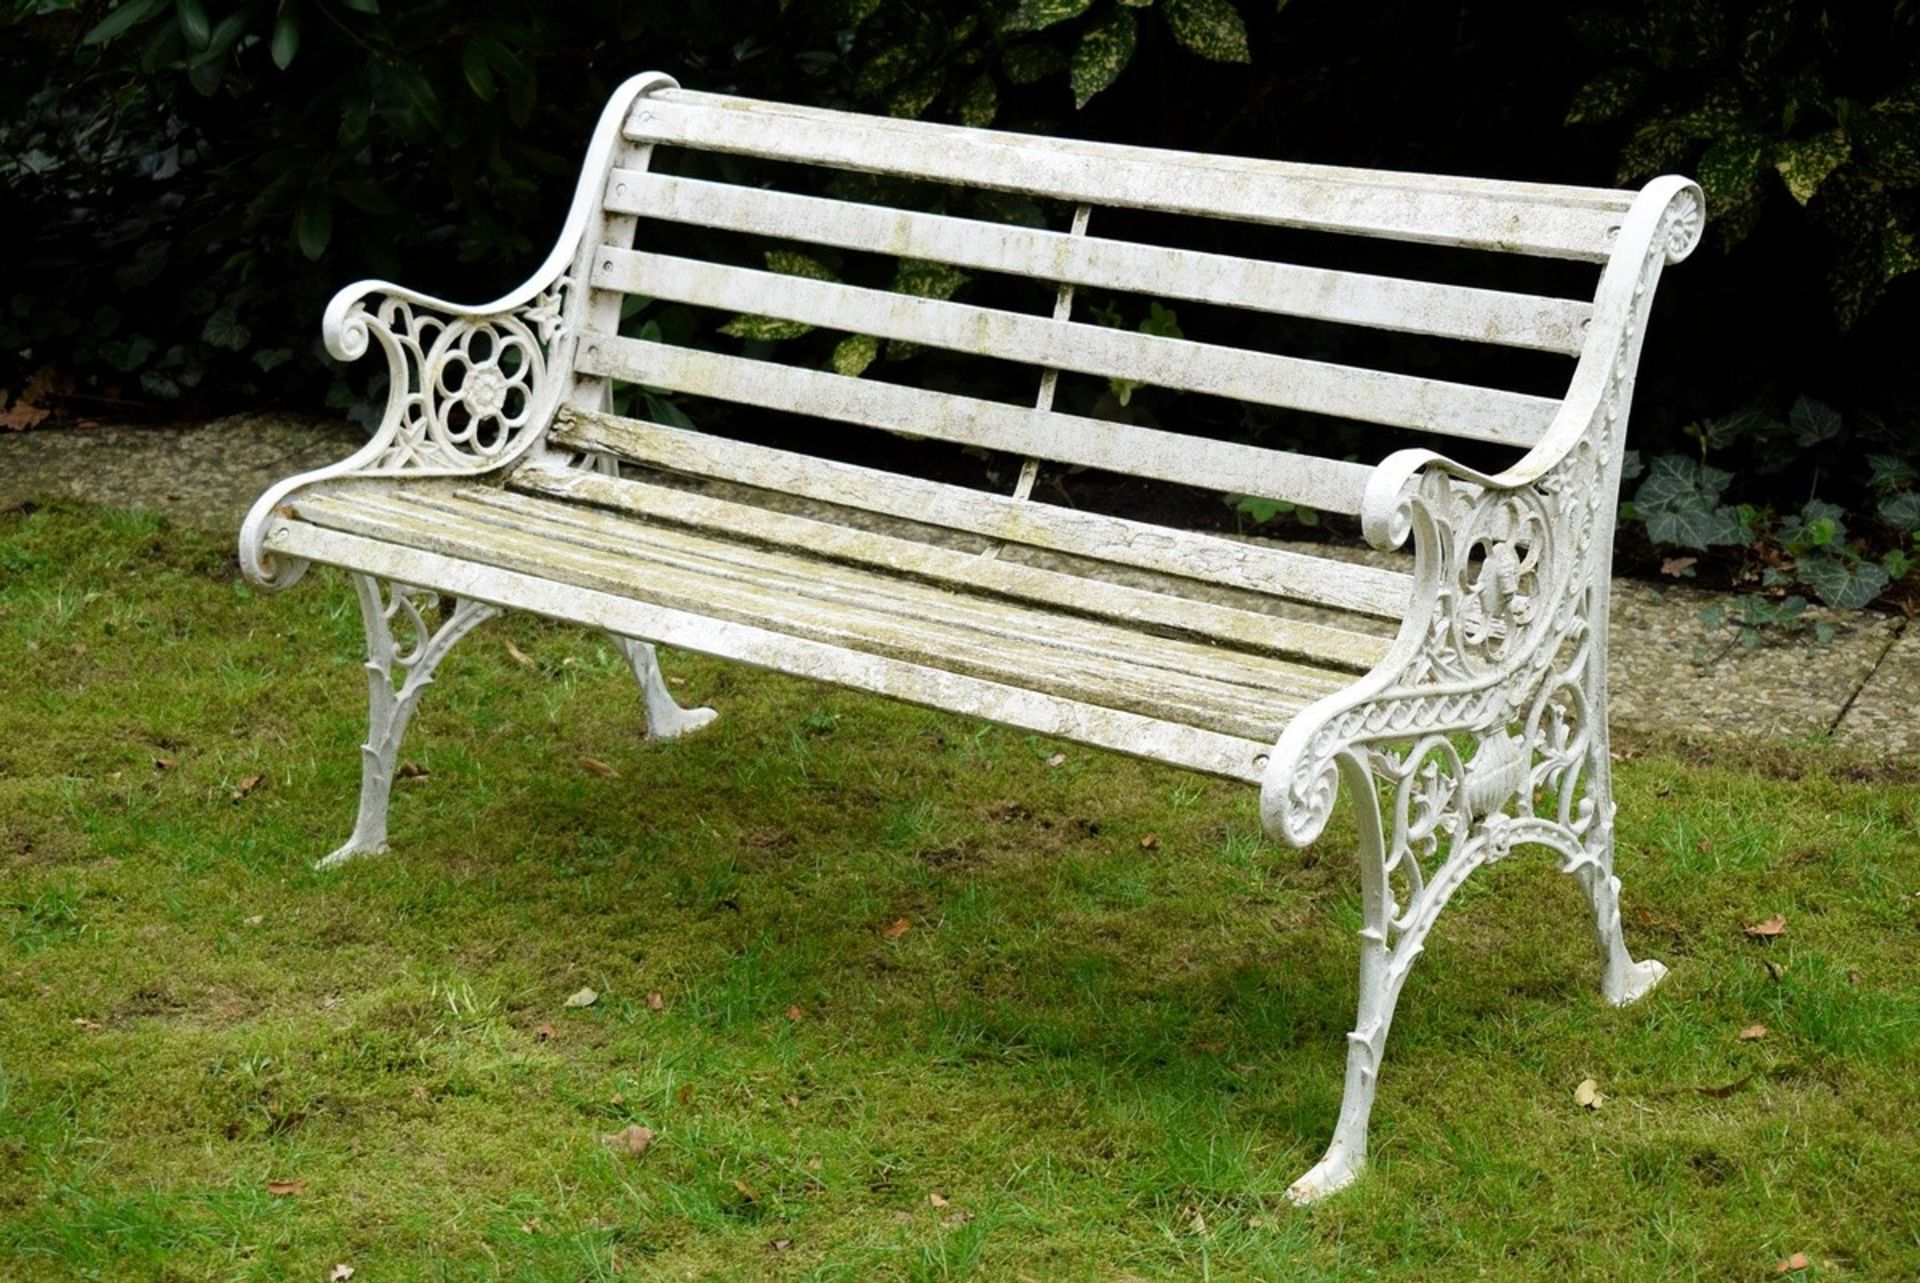 3 Teile Gusseisen Gartenmöbel: Bank mit Holzstre | 3 pieces cast iron garden furniture: bench with - Bild 2 aus 9